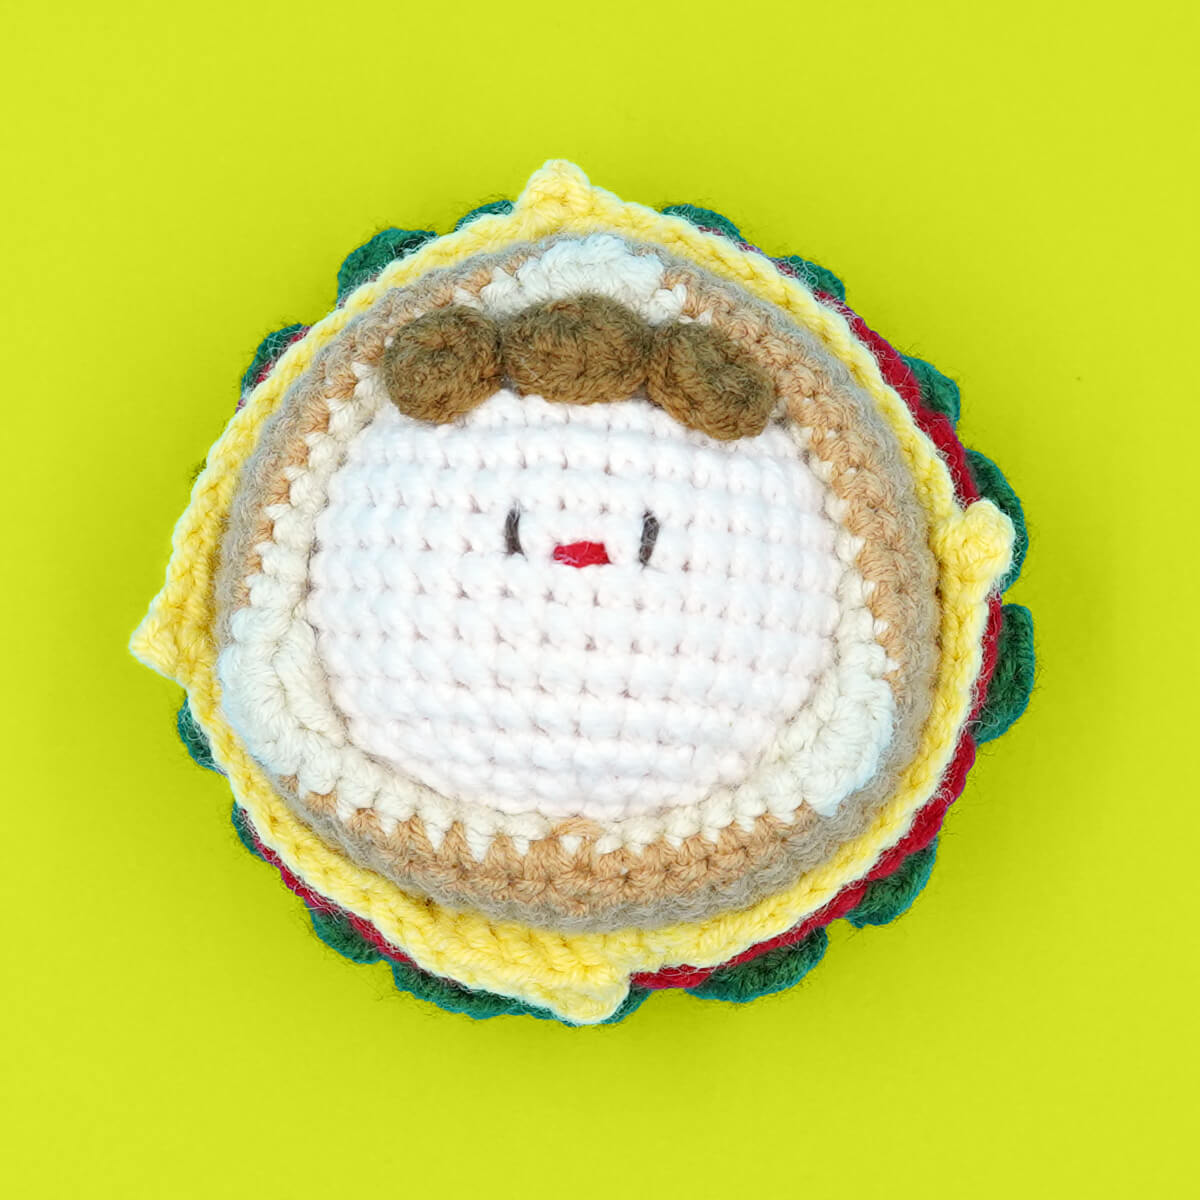 Kits de Crochet – Tienda online y escuela crochet Entrehilados